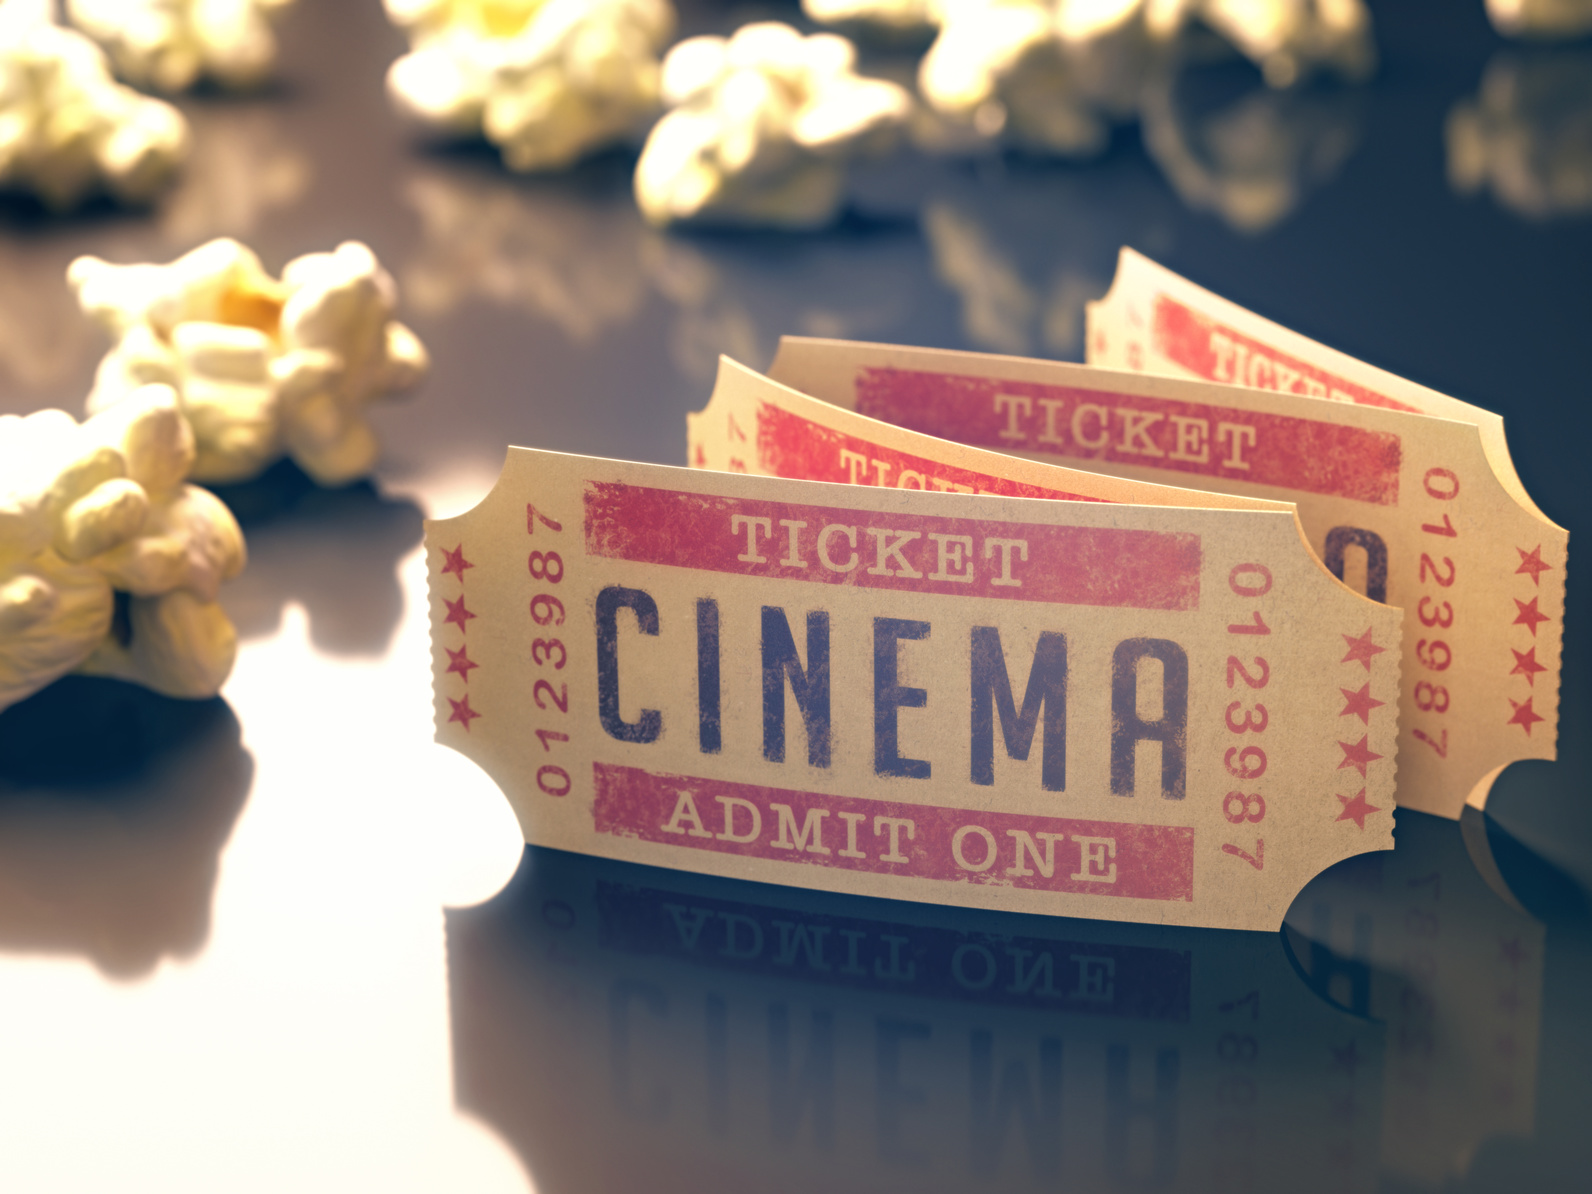 Cinema and popcorn